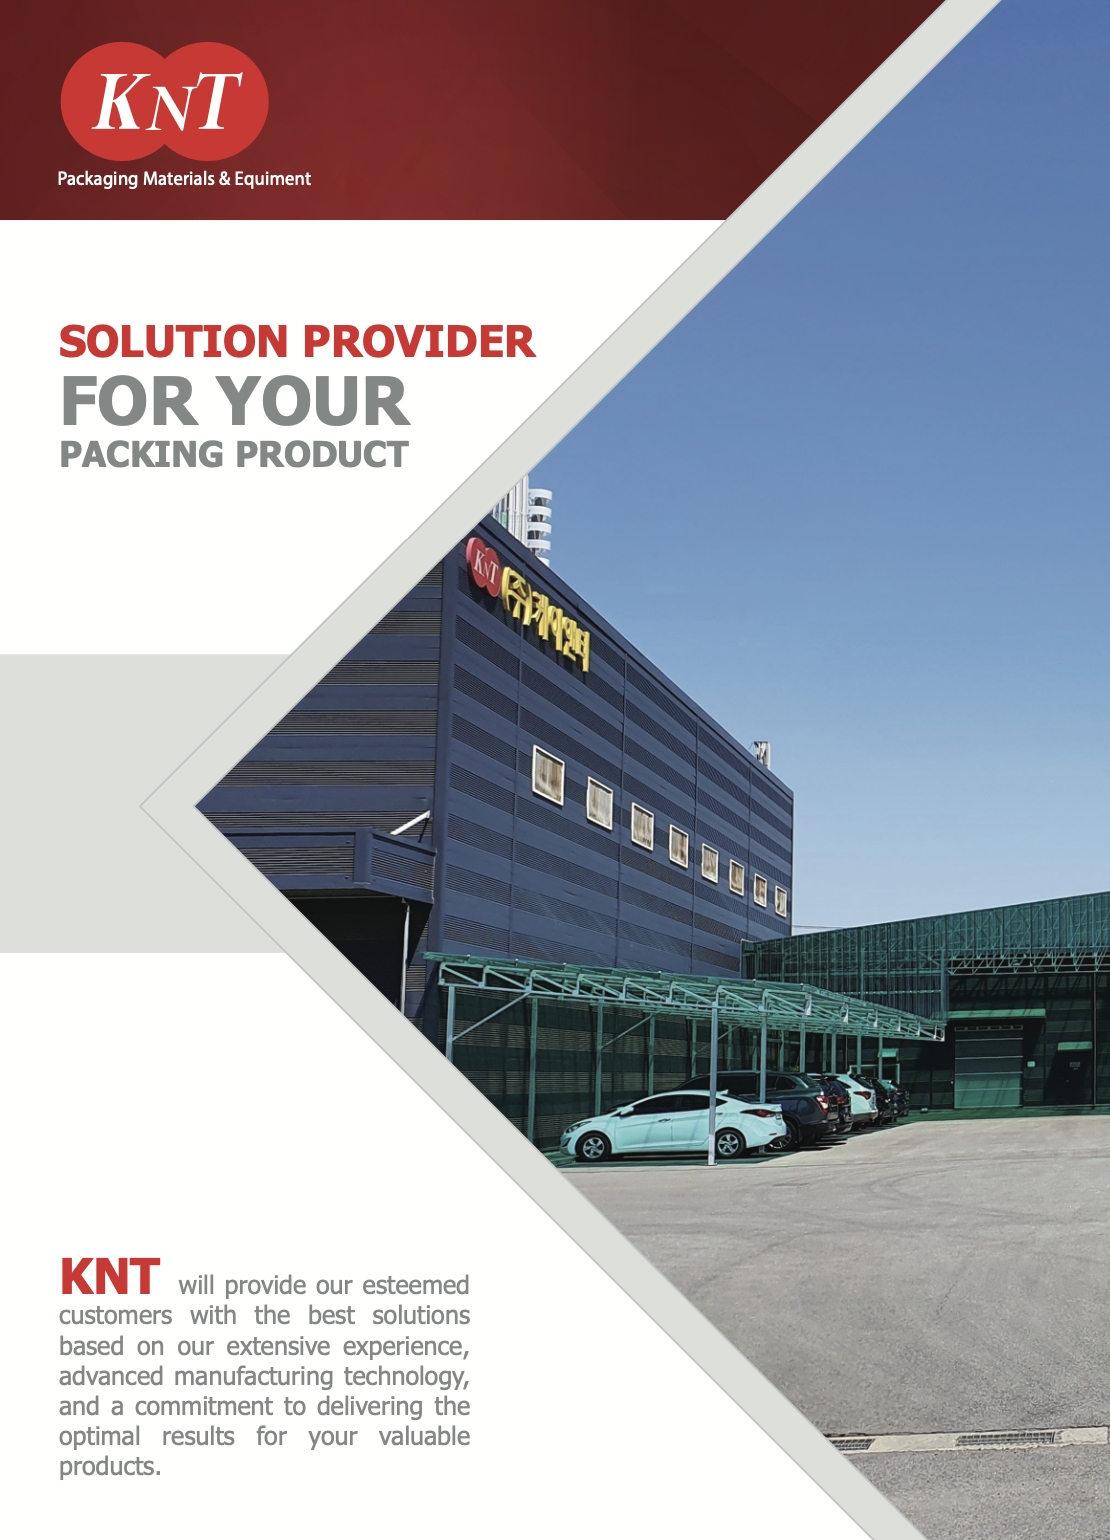 KNT cung cấp giải pháp cho các sản phẩm đóng gói của bạn